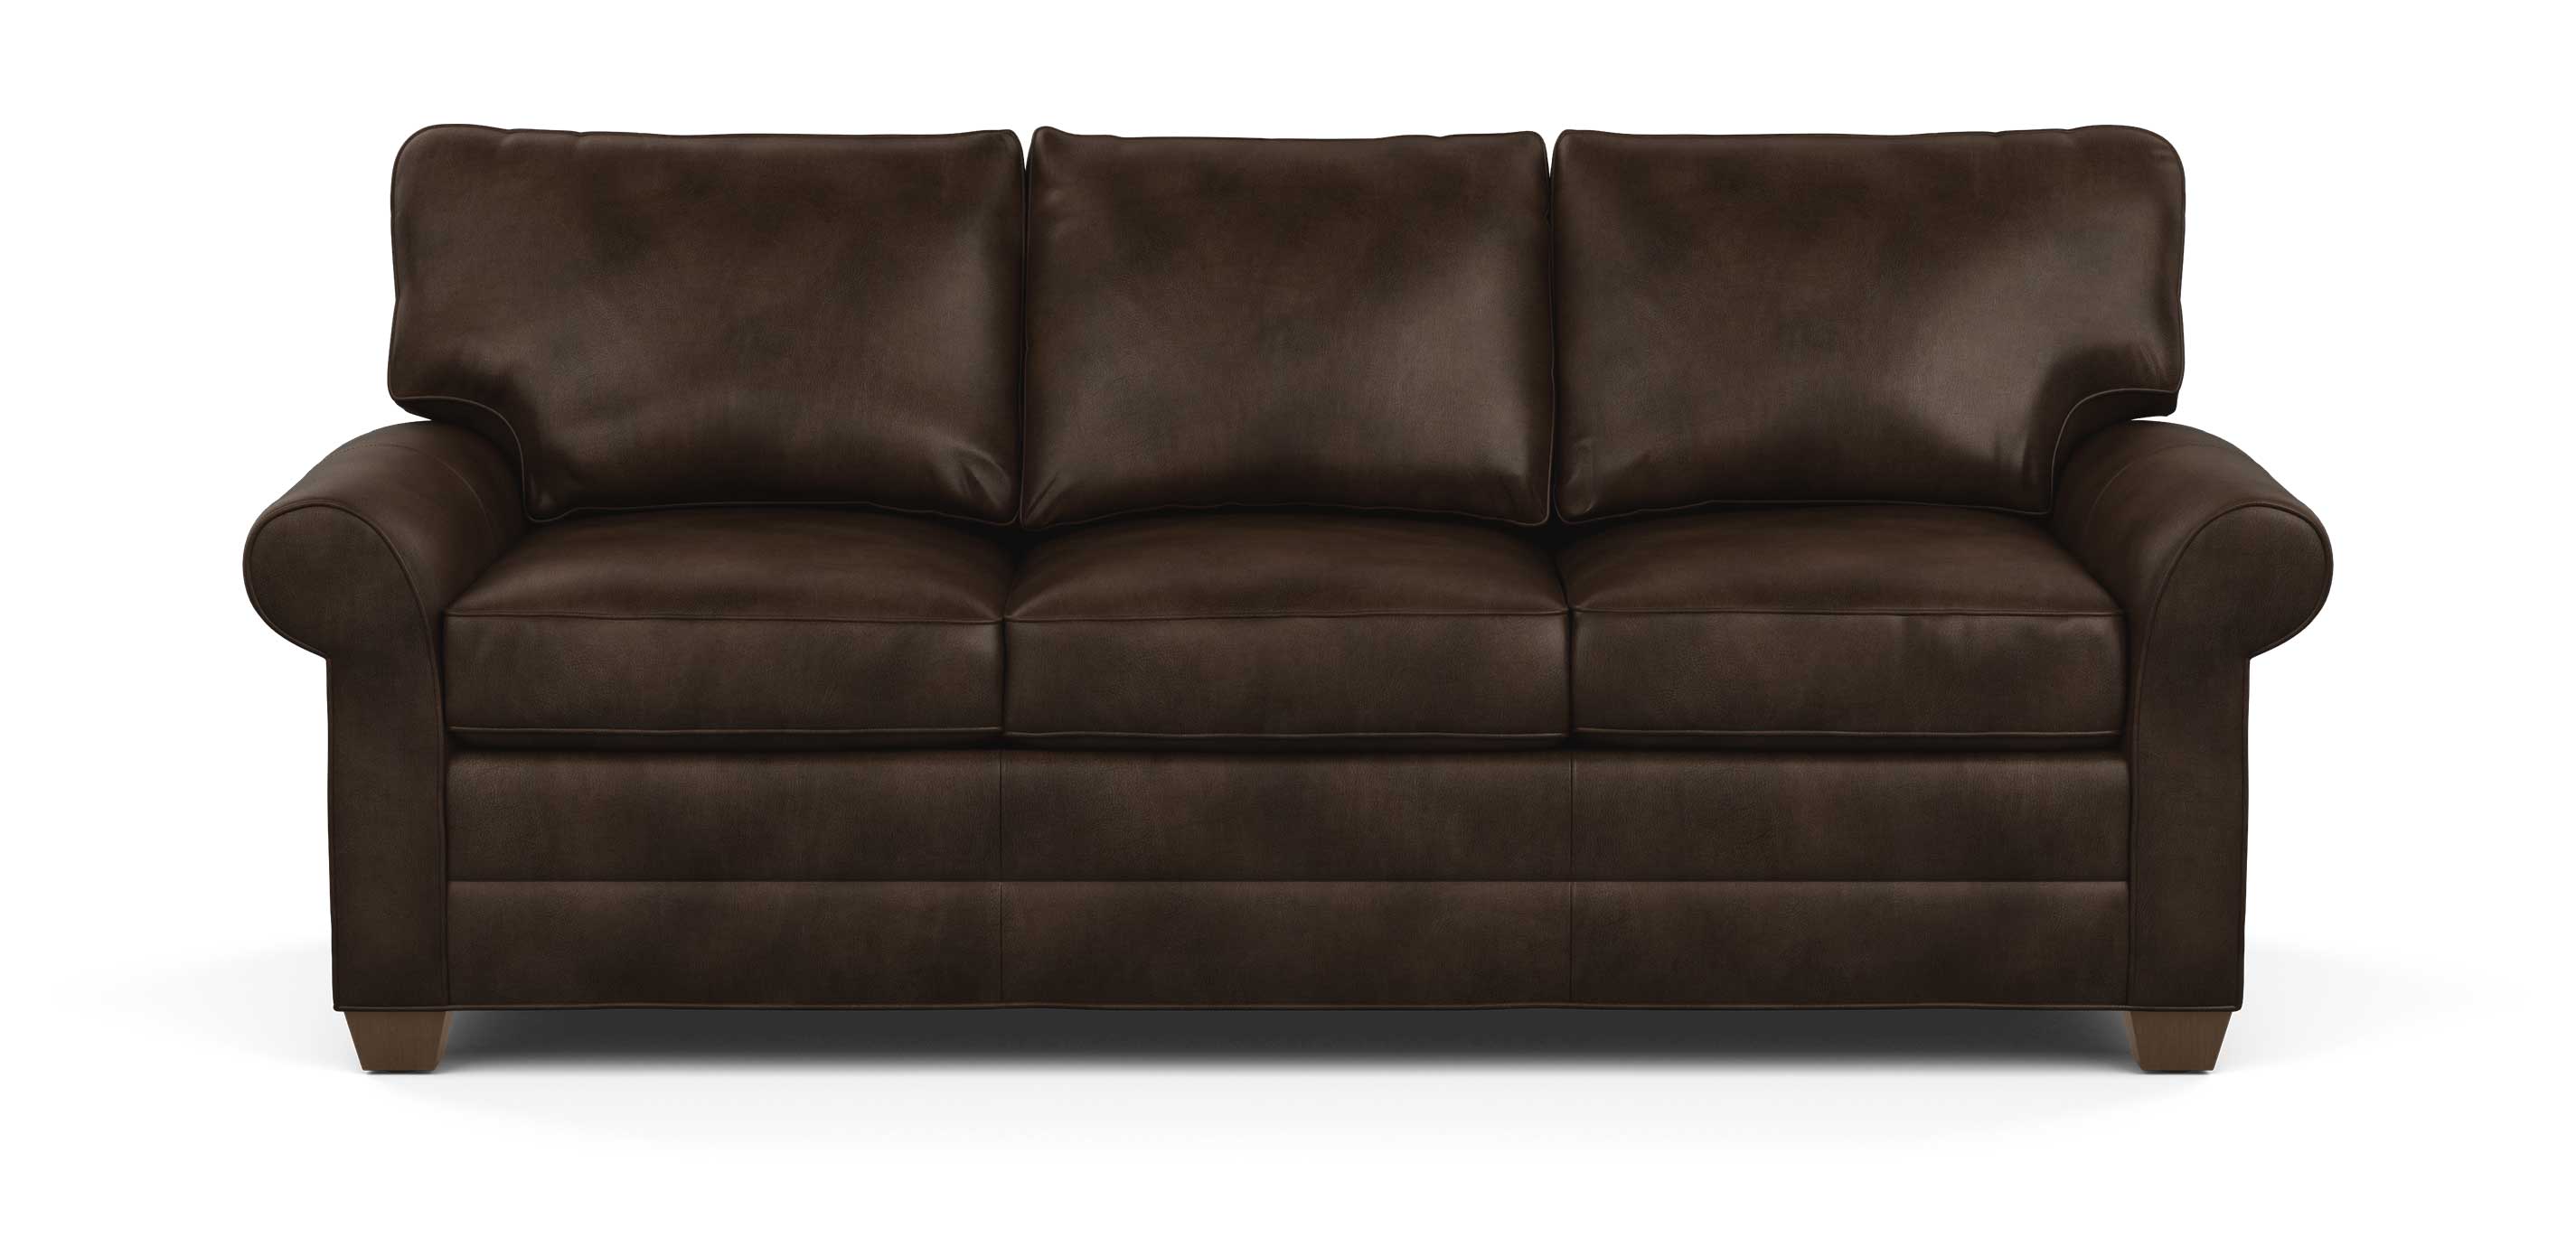 ethan allen bennett leather sofa reviews